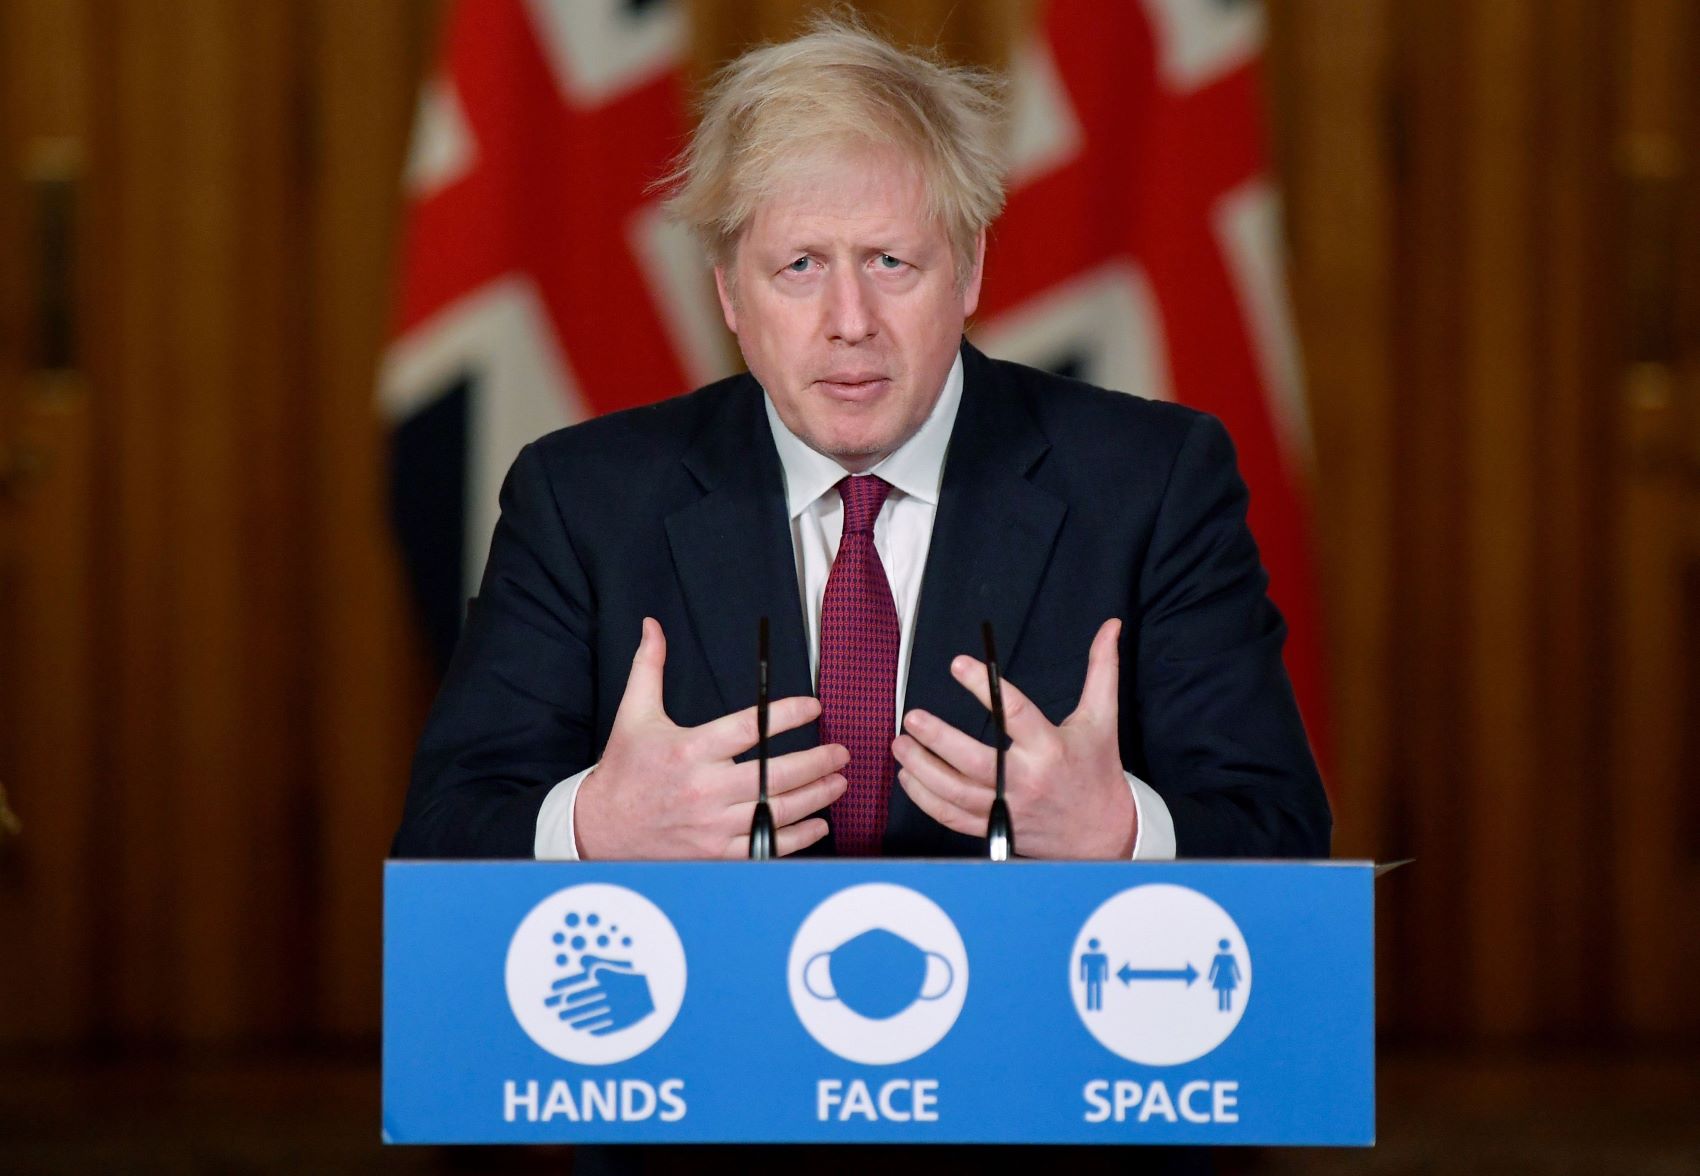 ジョンソン英首相は緊急記者会で、新たに見つかった新型コロナウイルスの変異種が従来種に比べて強い感染力を持っているとの分析結果を発表＝イギリス・ロンドン（2020年12月19日）【AFP時事】